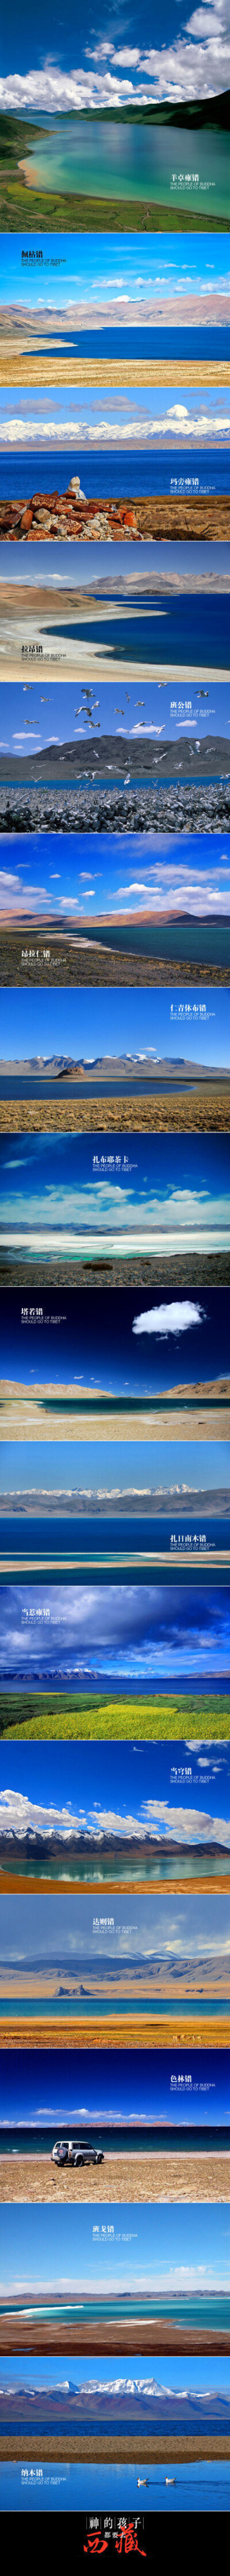 【精选西藏16处美景】 每个人心中都有个西藏 。